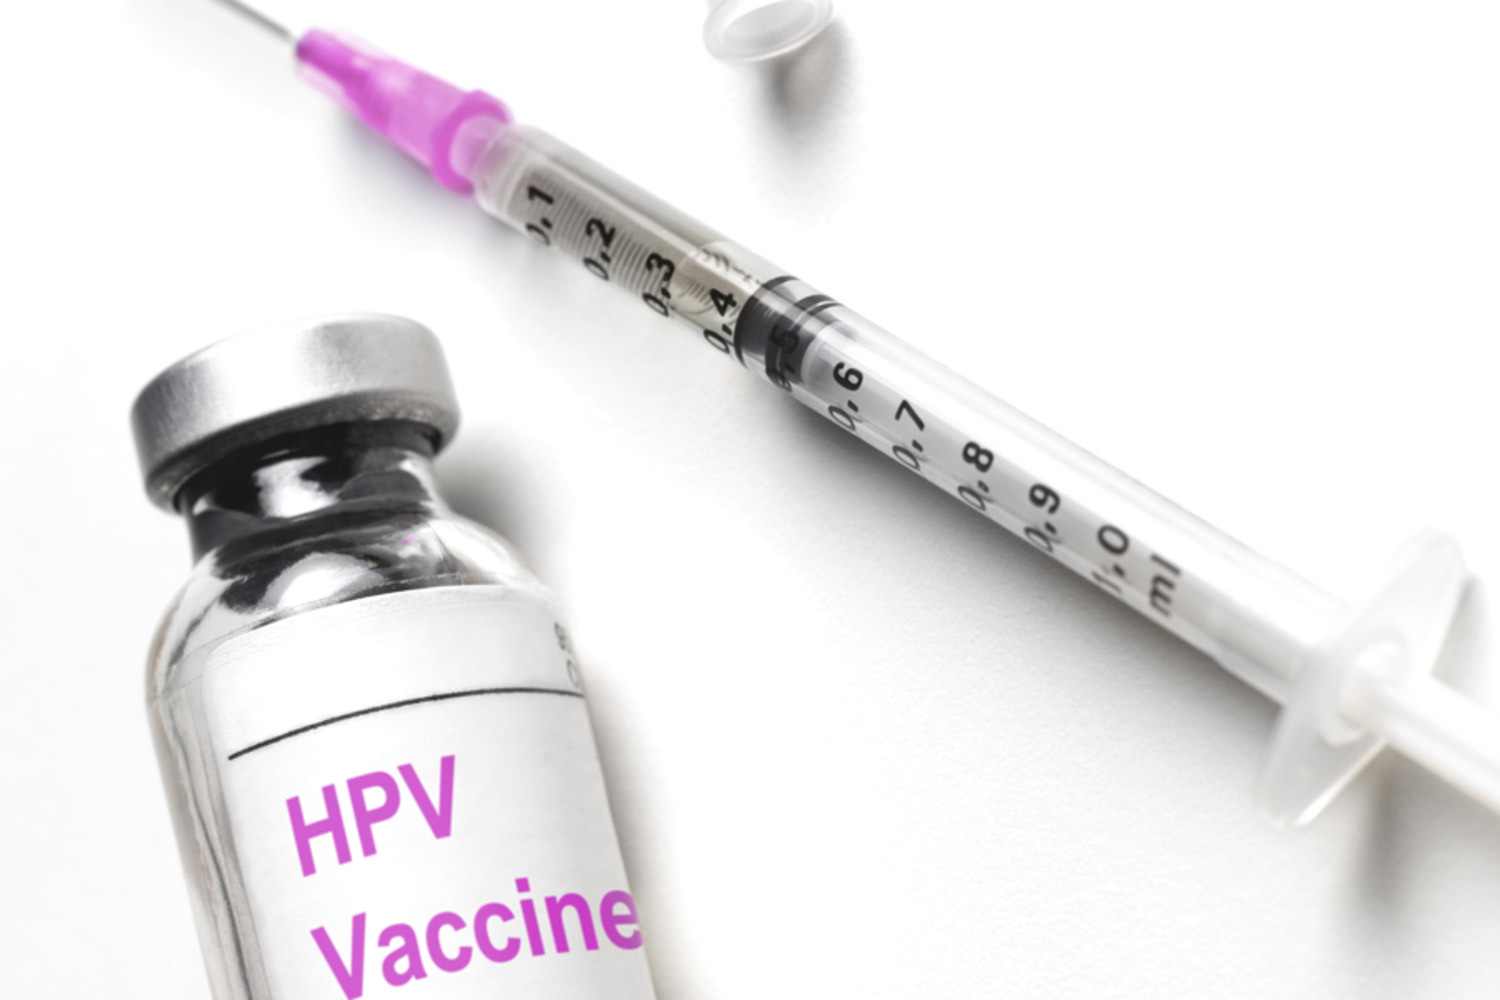 Papillomavirus vaccine